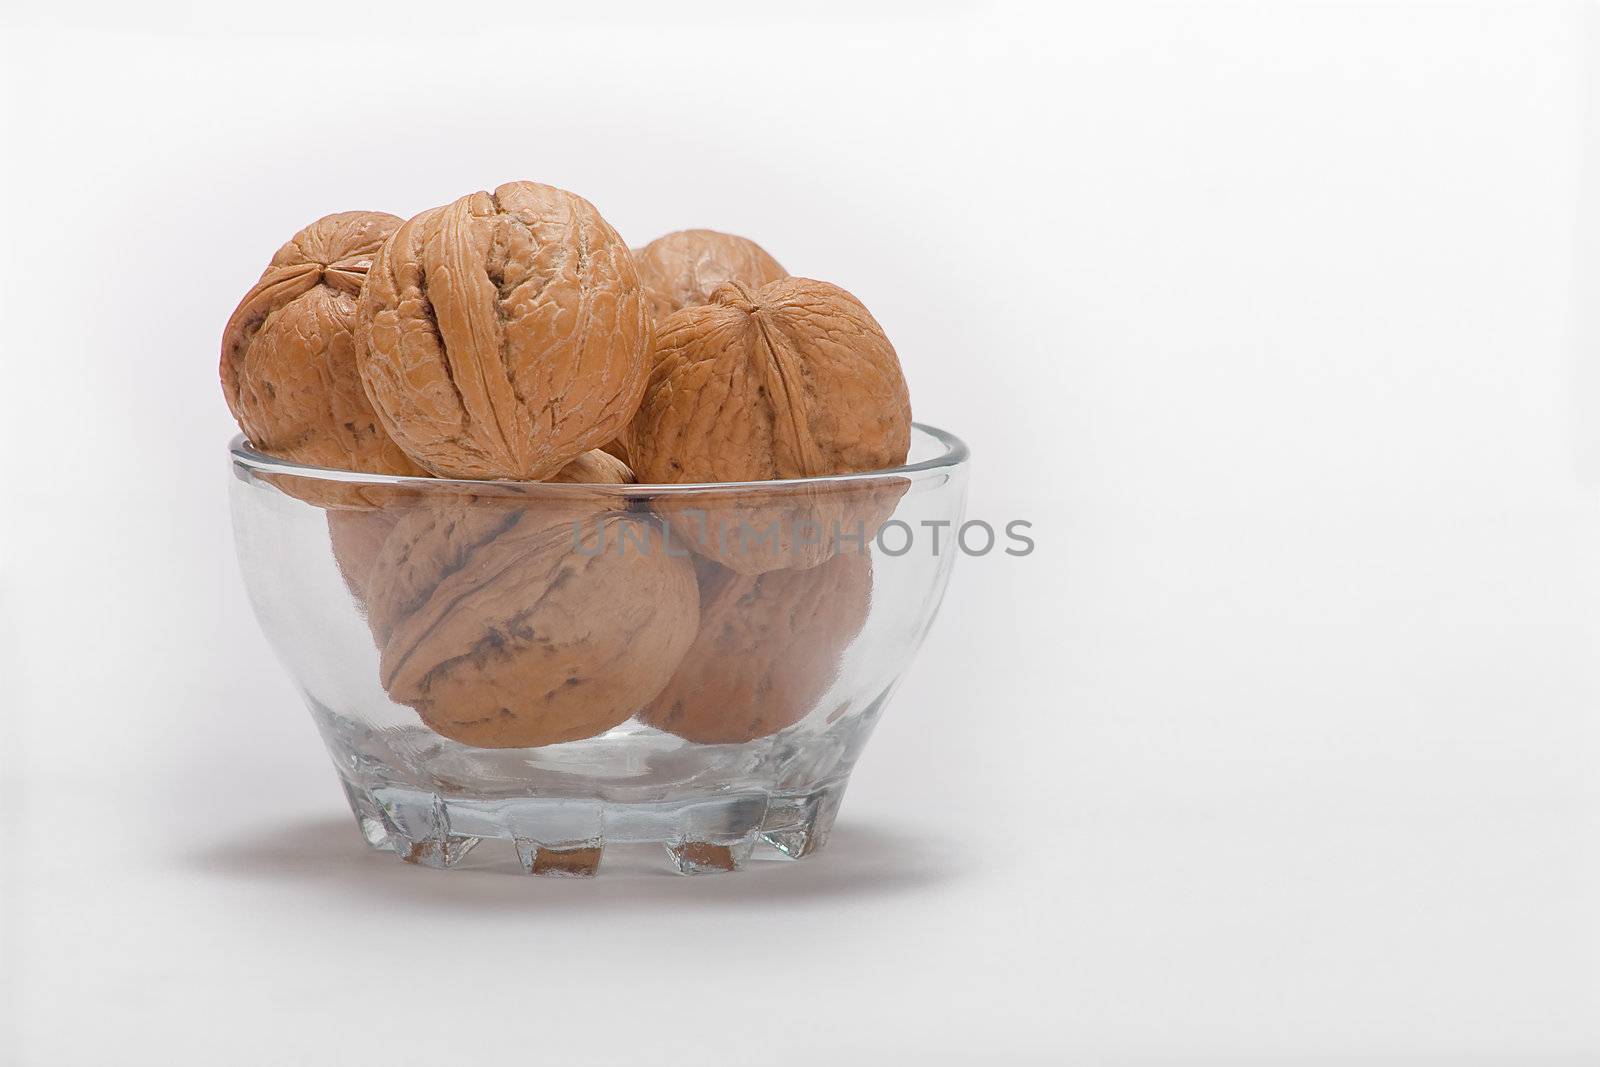 dry walnut fruit studio isolated close-up